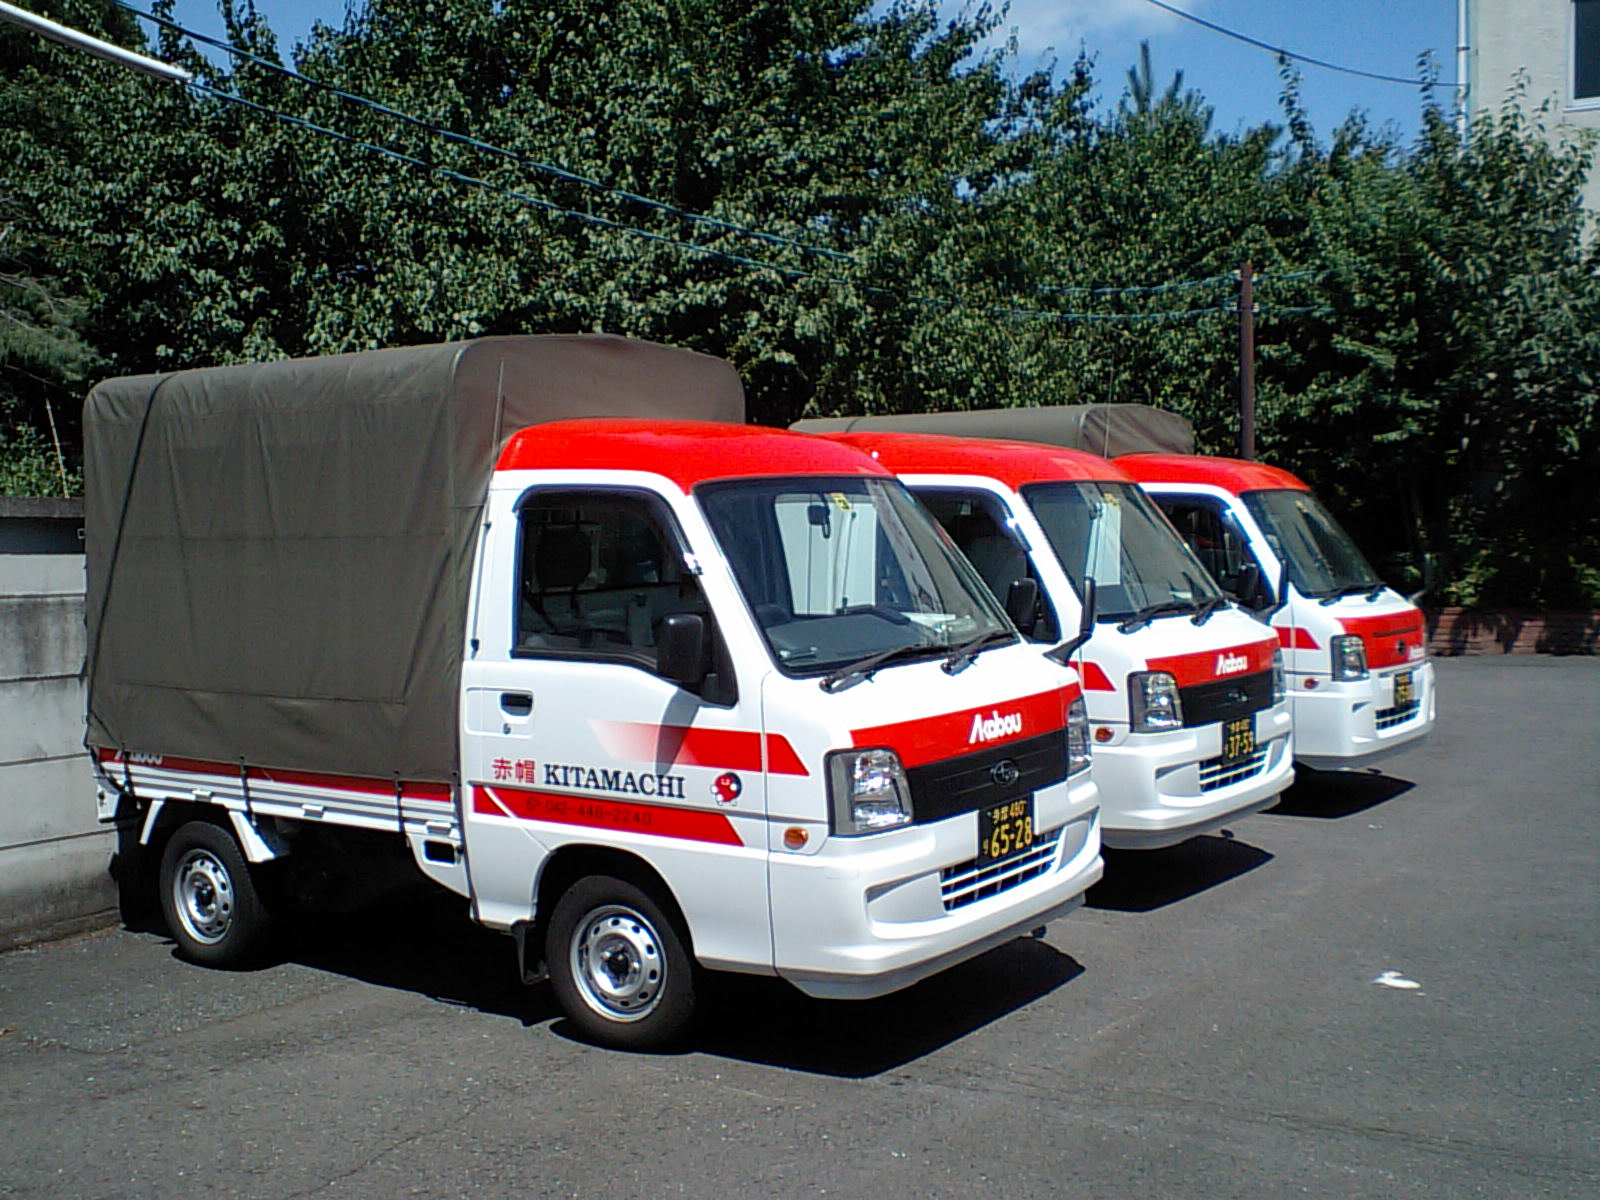 東京から栃木への運送・配送で節約をお約束する赤帽北町運送です